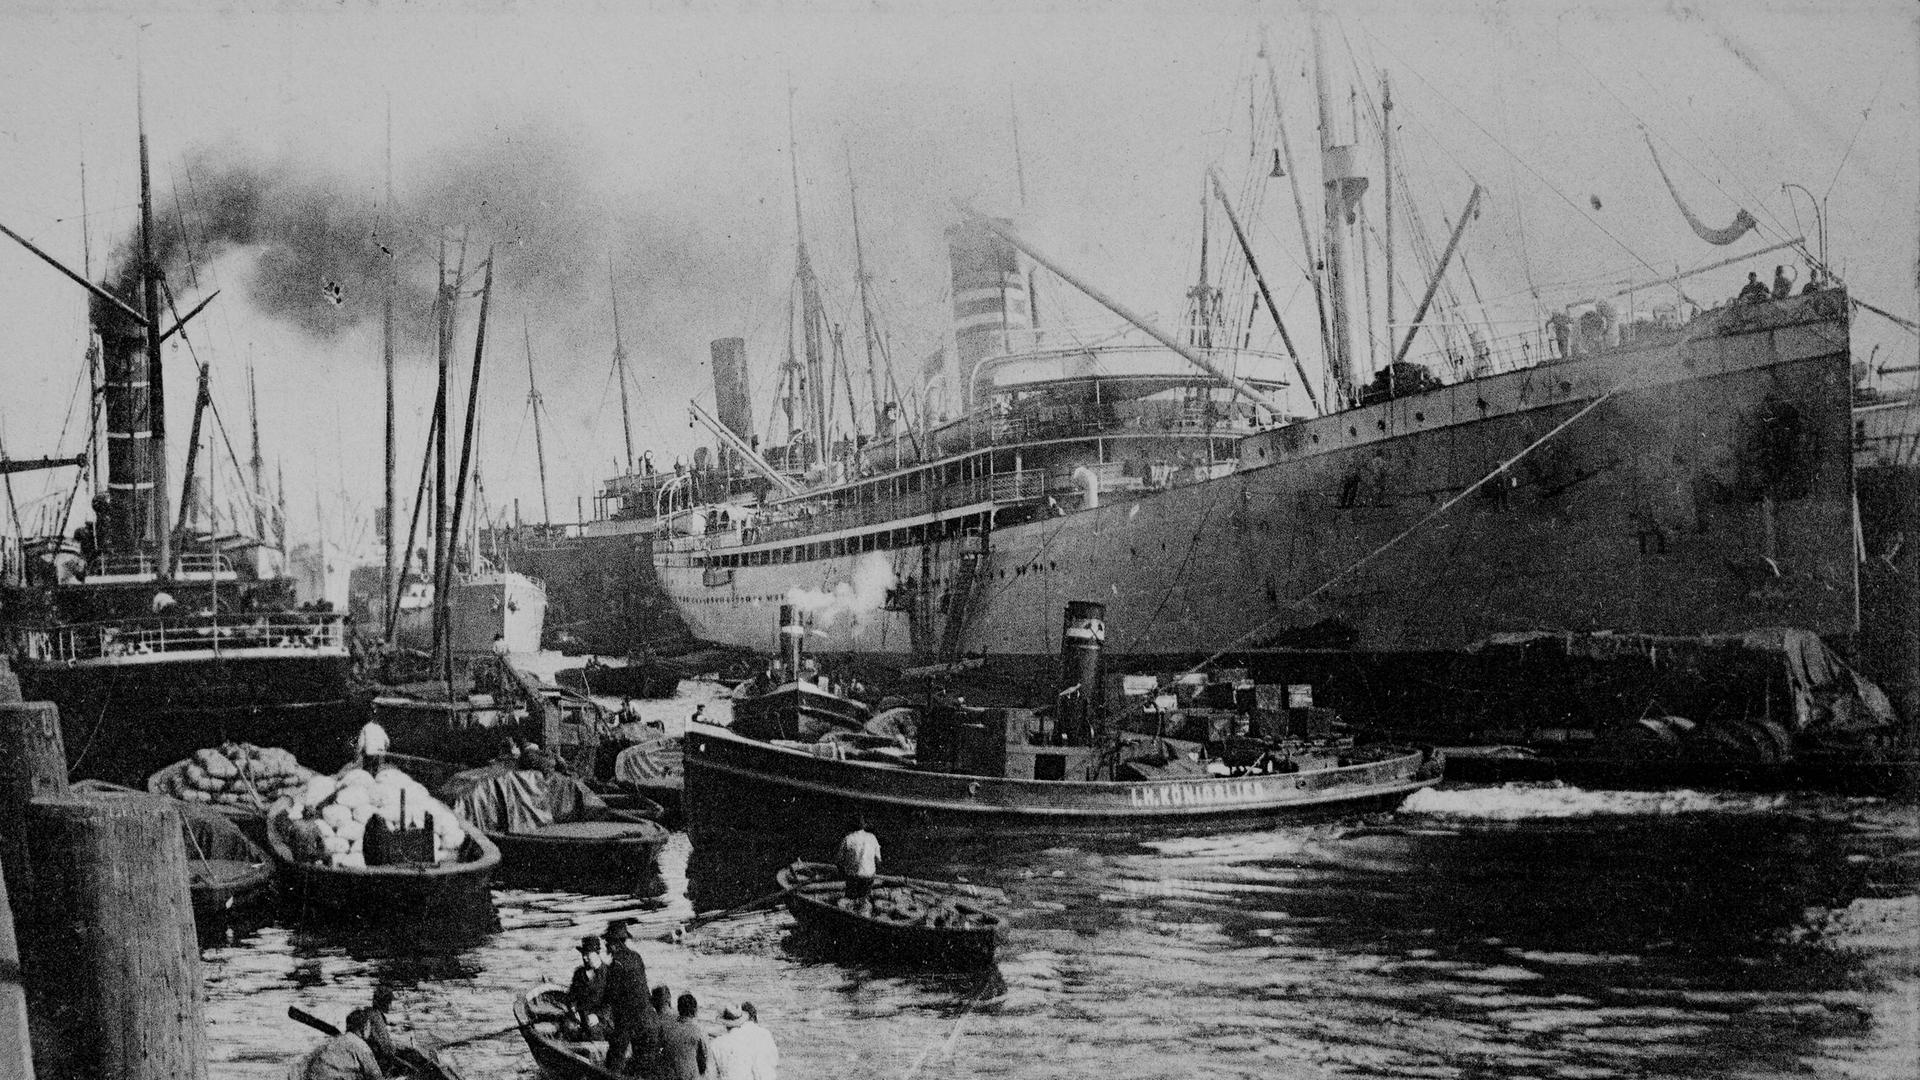 Der Dampfer "Gouverneur" im Hamburger Hafen. Historische Aufnahme von ca. 1899 